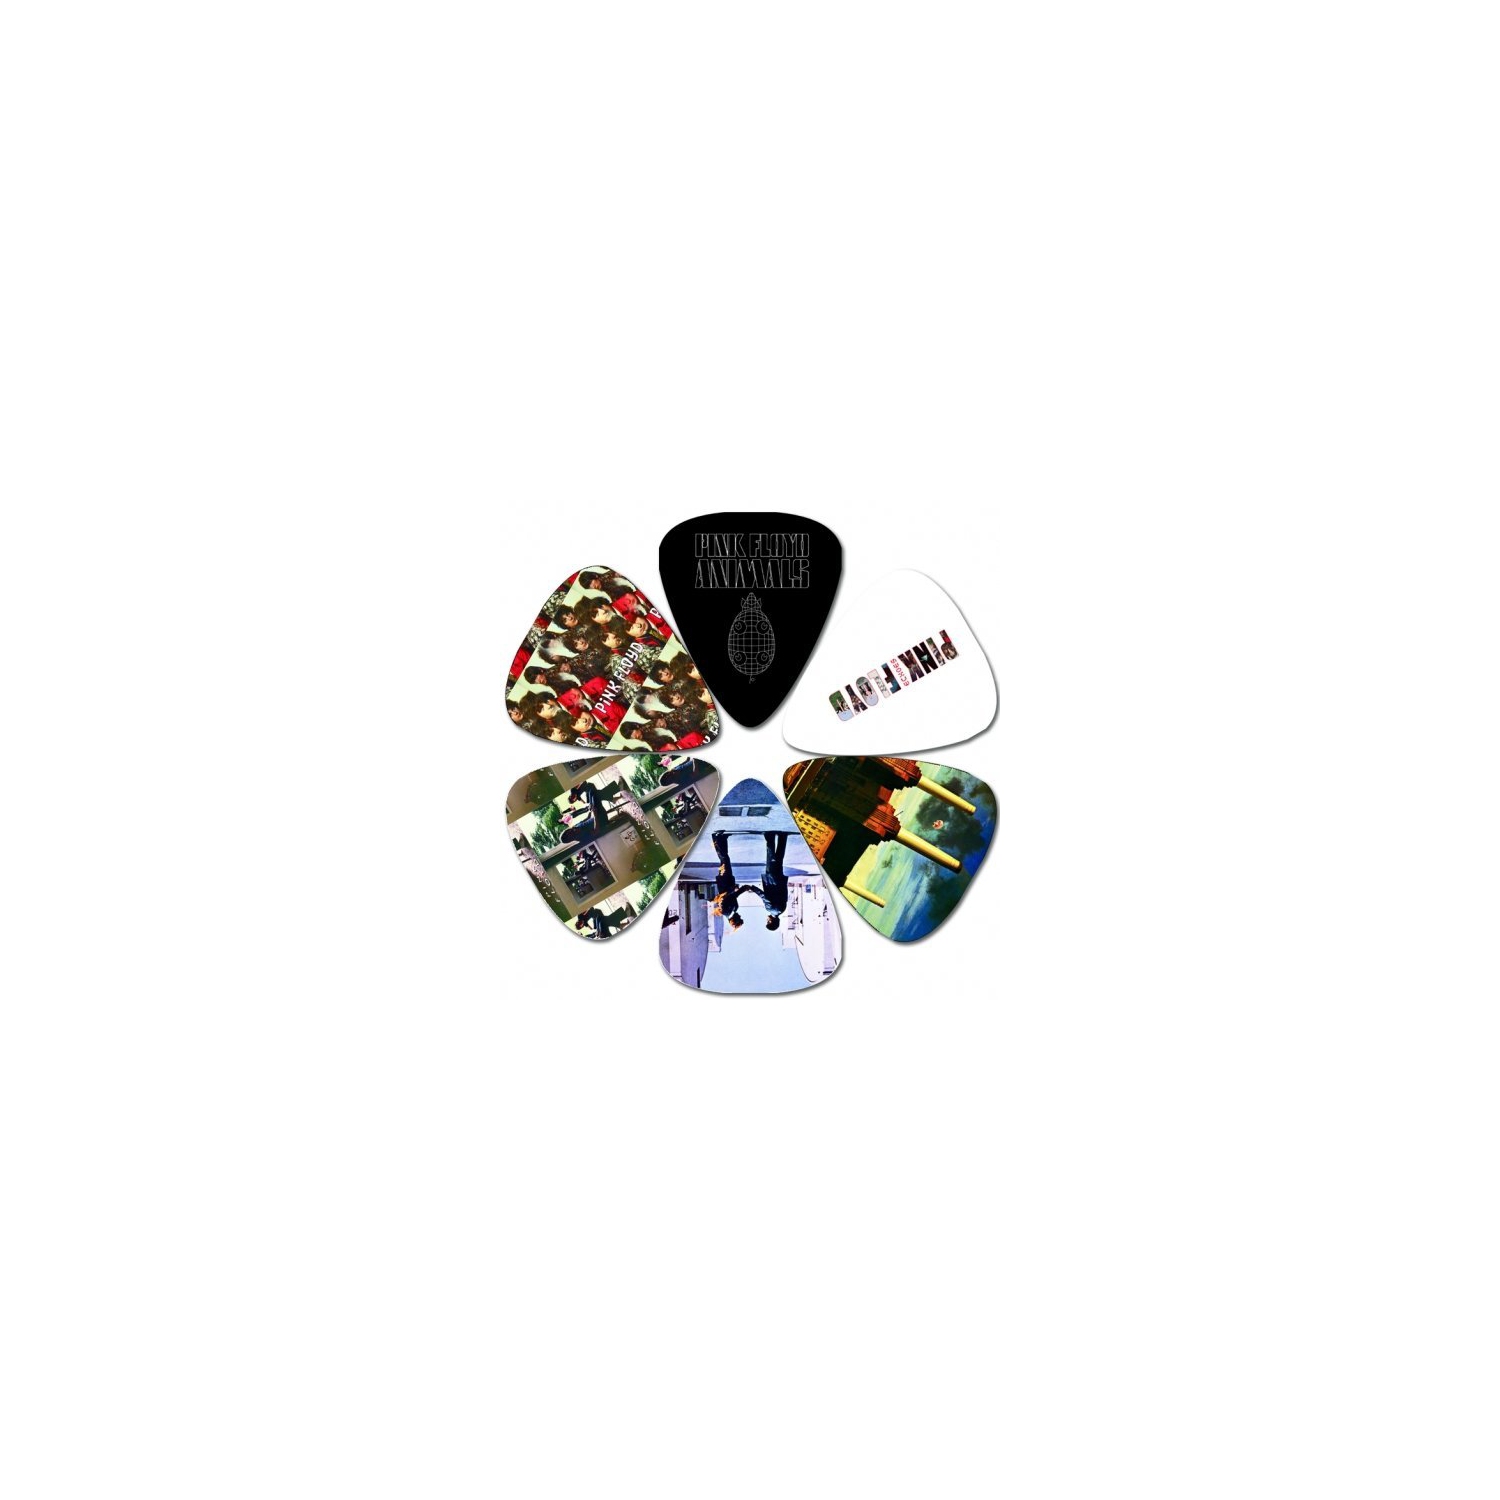 Perris Pink Floyd Licensed Guitar Picks - 6 Pack, Black, White